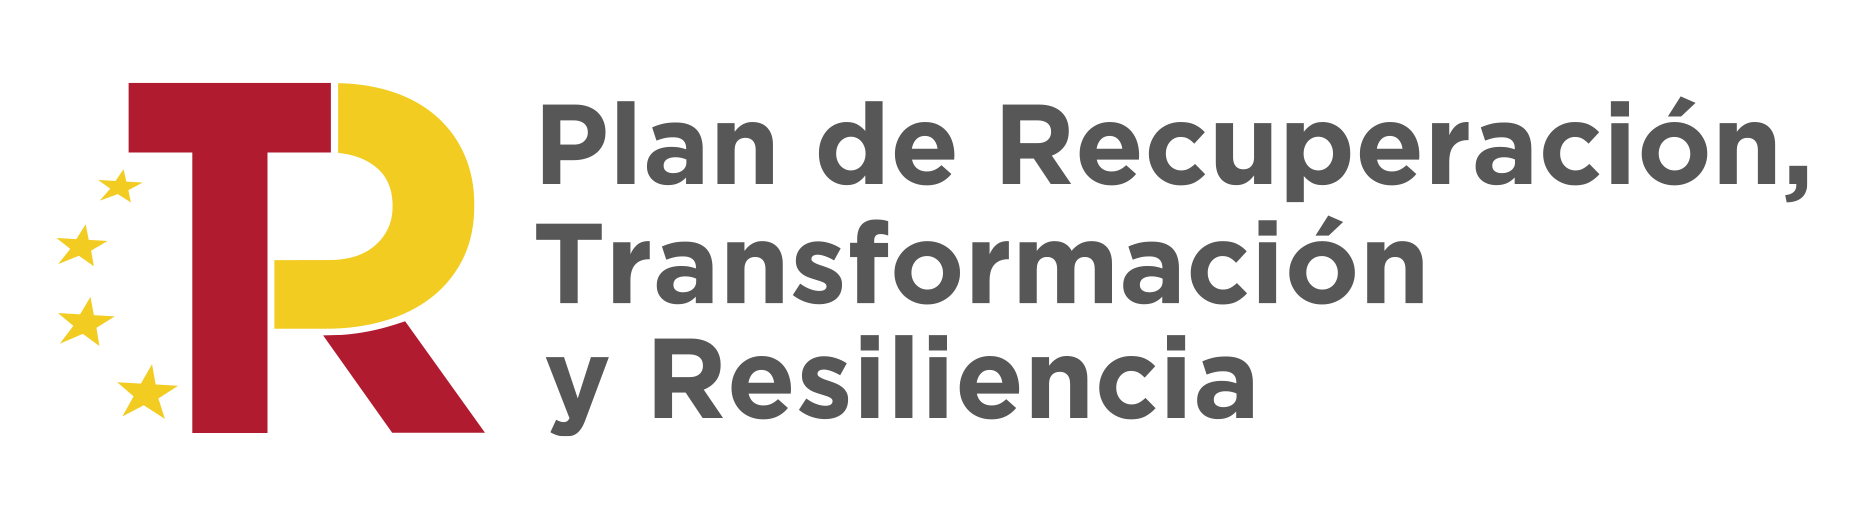 Sello Kit Digital Plan de Recuperación, Transformación y Resiliencia